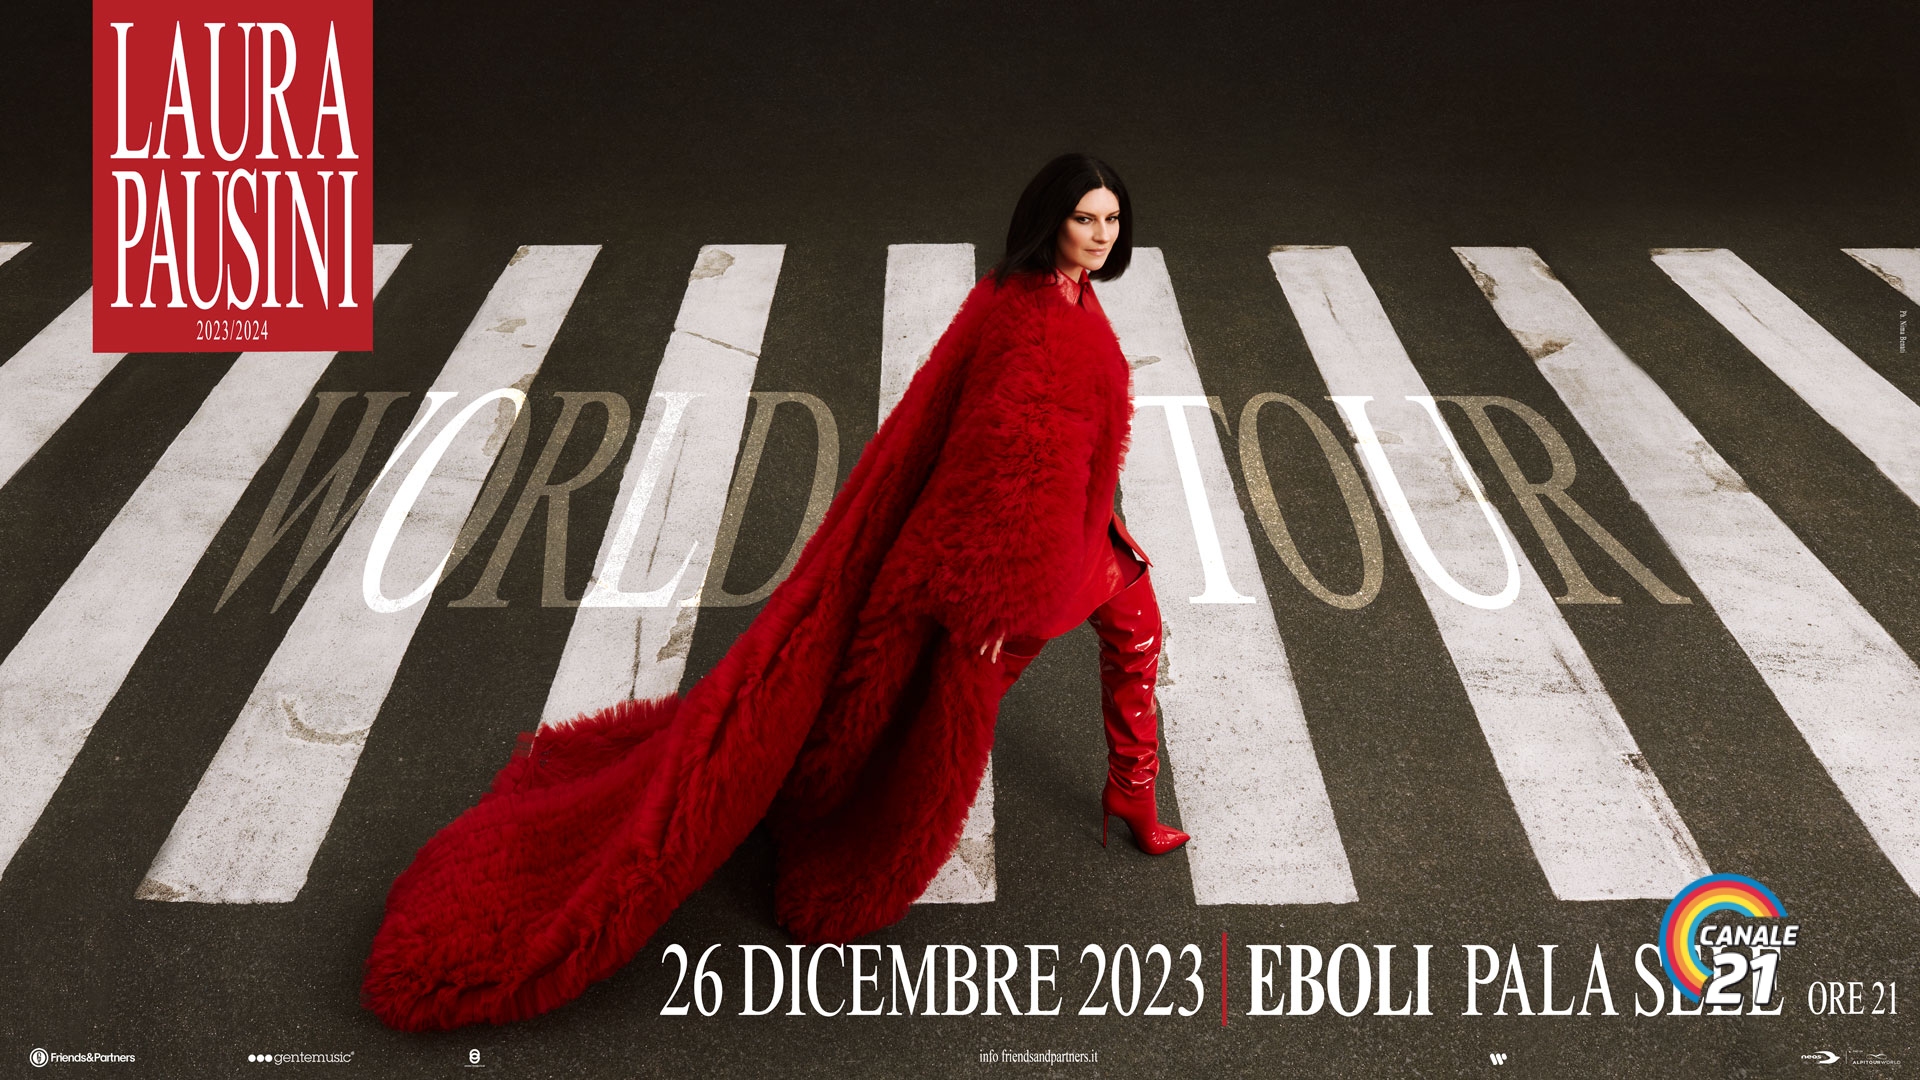 Laura Pausini World Tour 2023: il 26 Dicembre il concerto ad Eboli